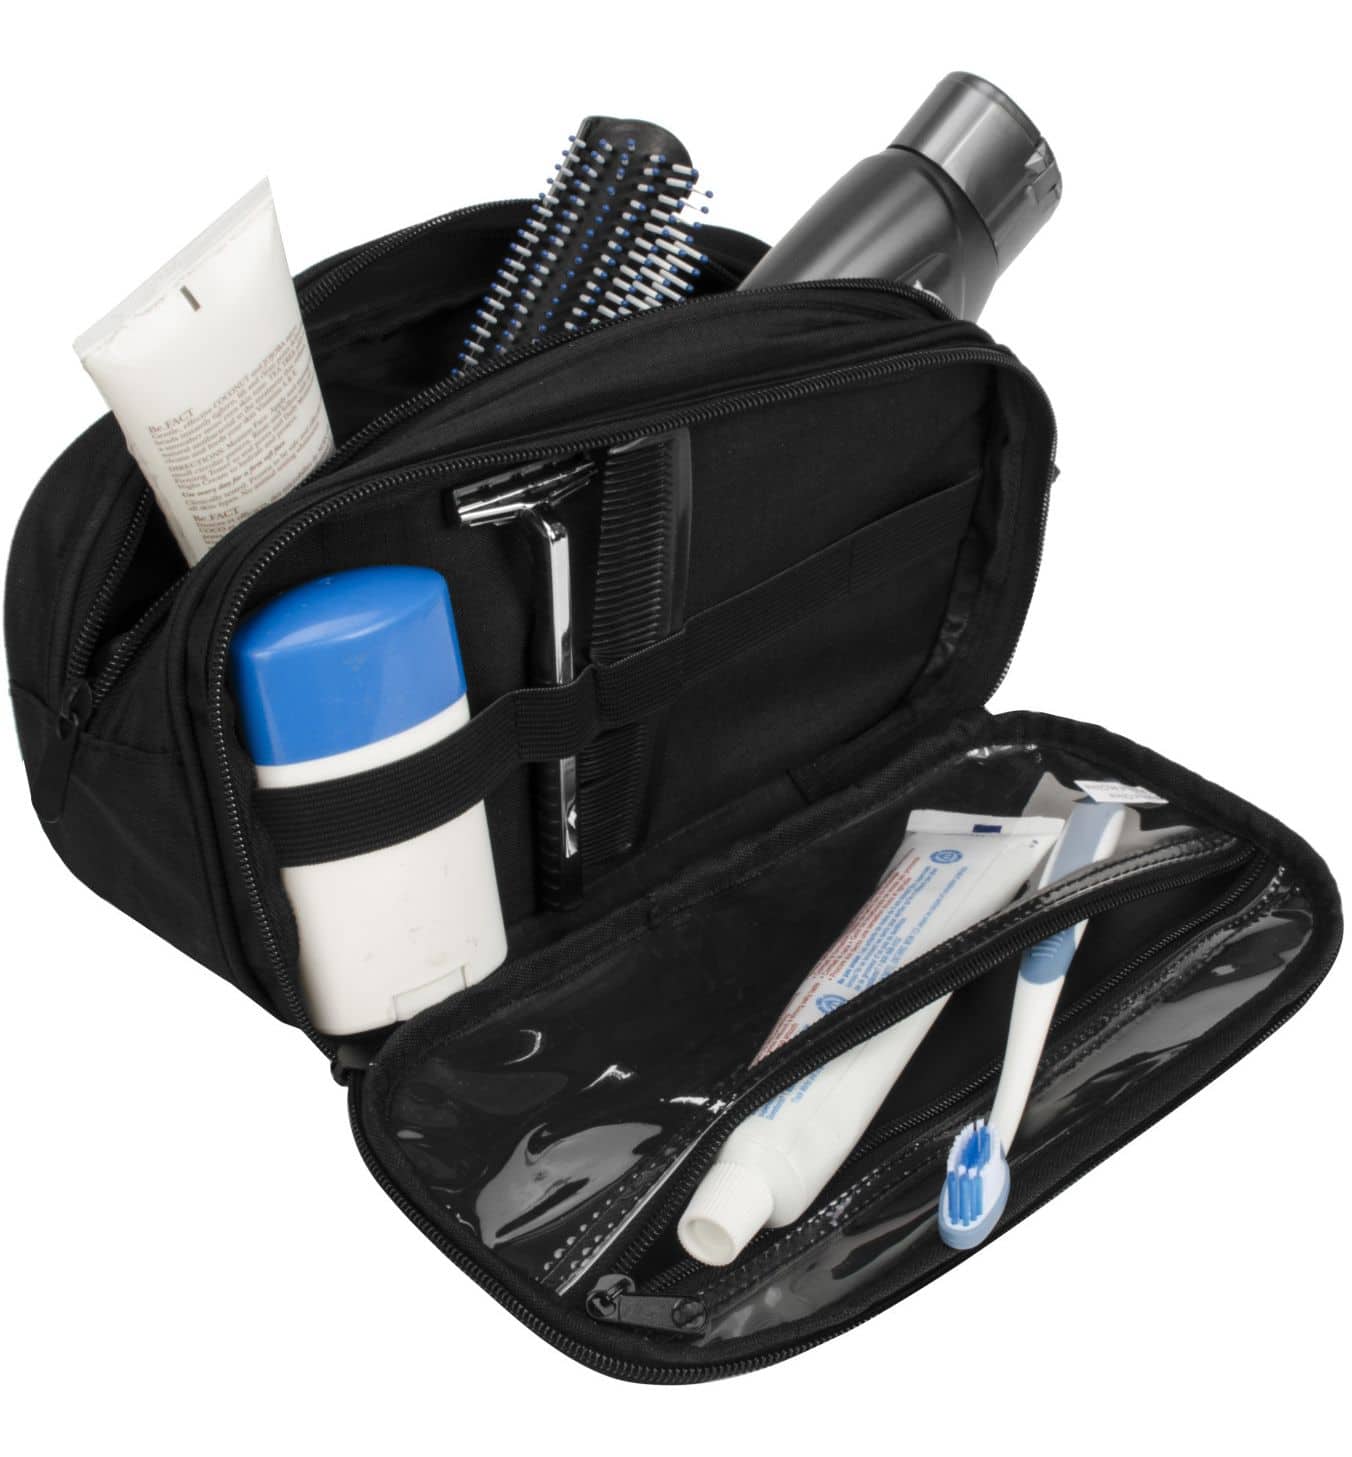 Maple Leaf Leak-Resistant Travel Toiletry Kit Shaving Bag w/ 3